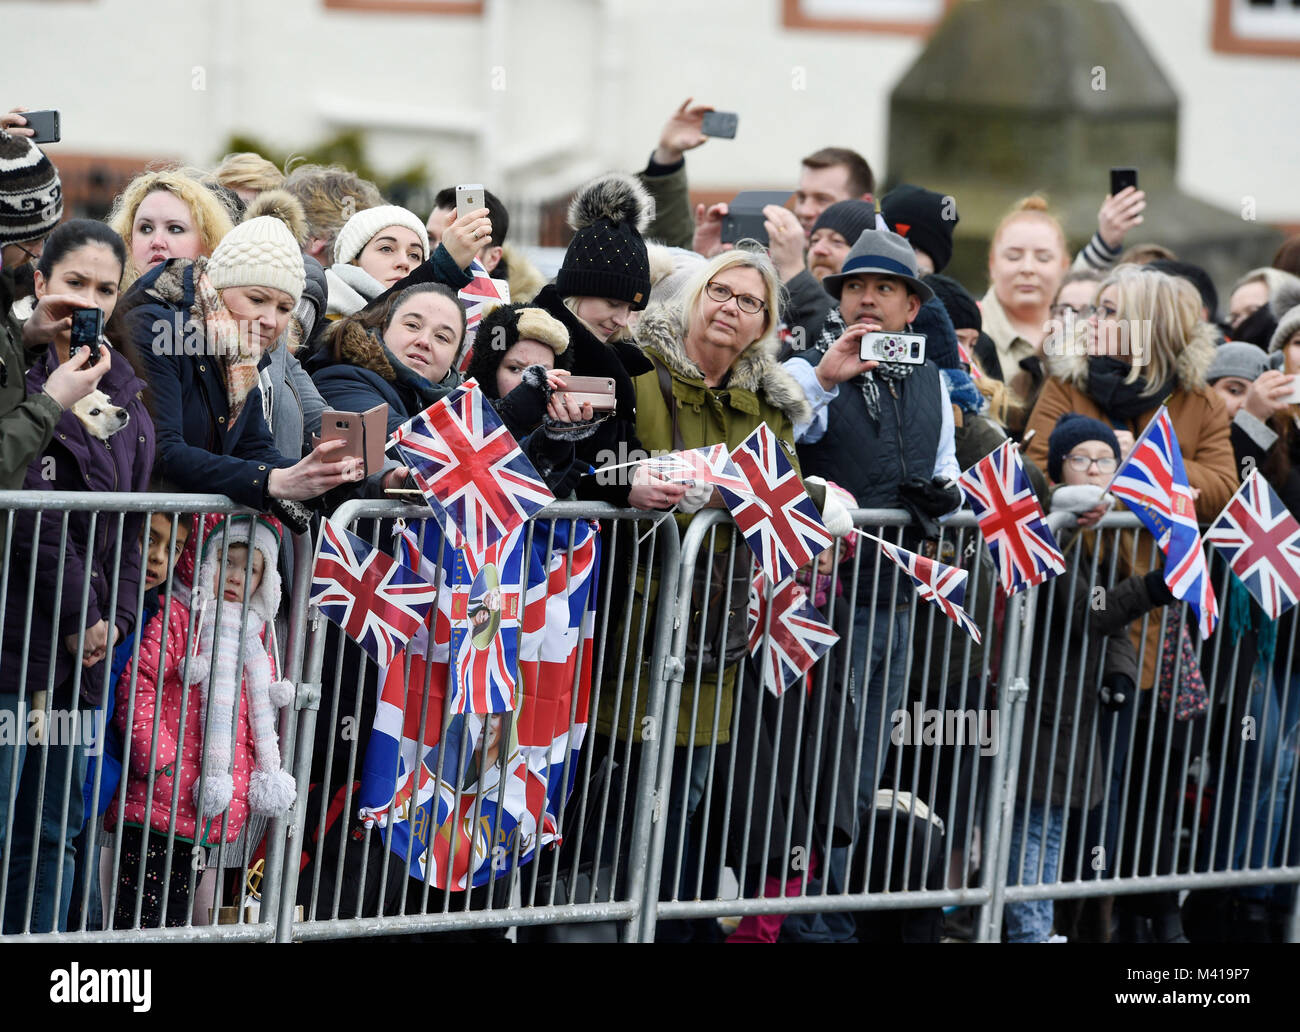 La foule attendant l'arrivée de prince Harry et Meghan Markle en avant de la foule à l'esplanade au château d'Édimbourg, lors de leur visite à l'Écosse. Banque D'Images